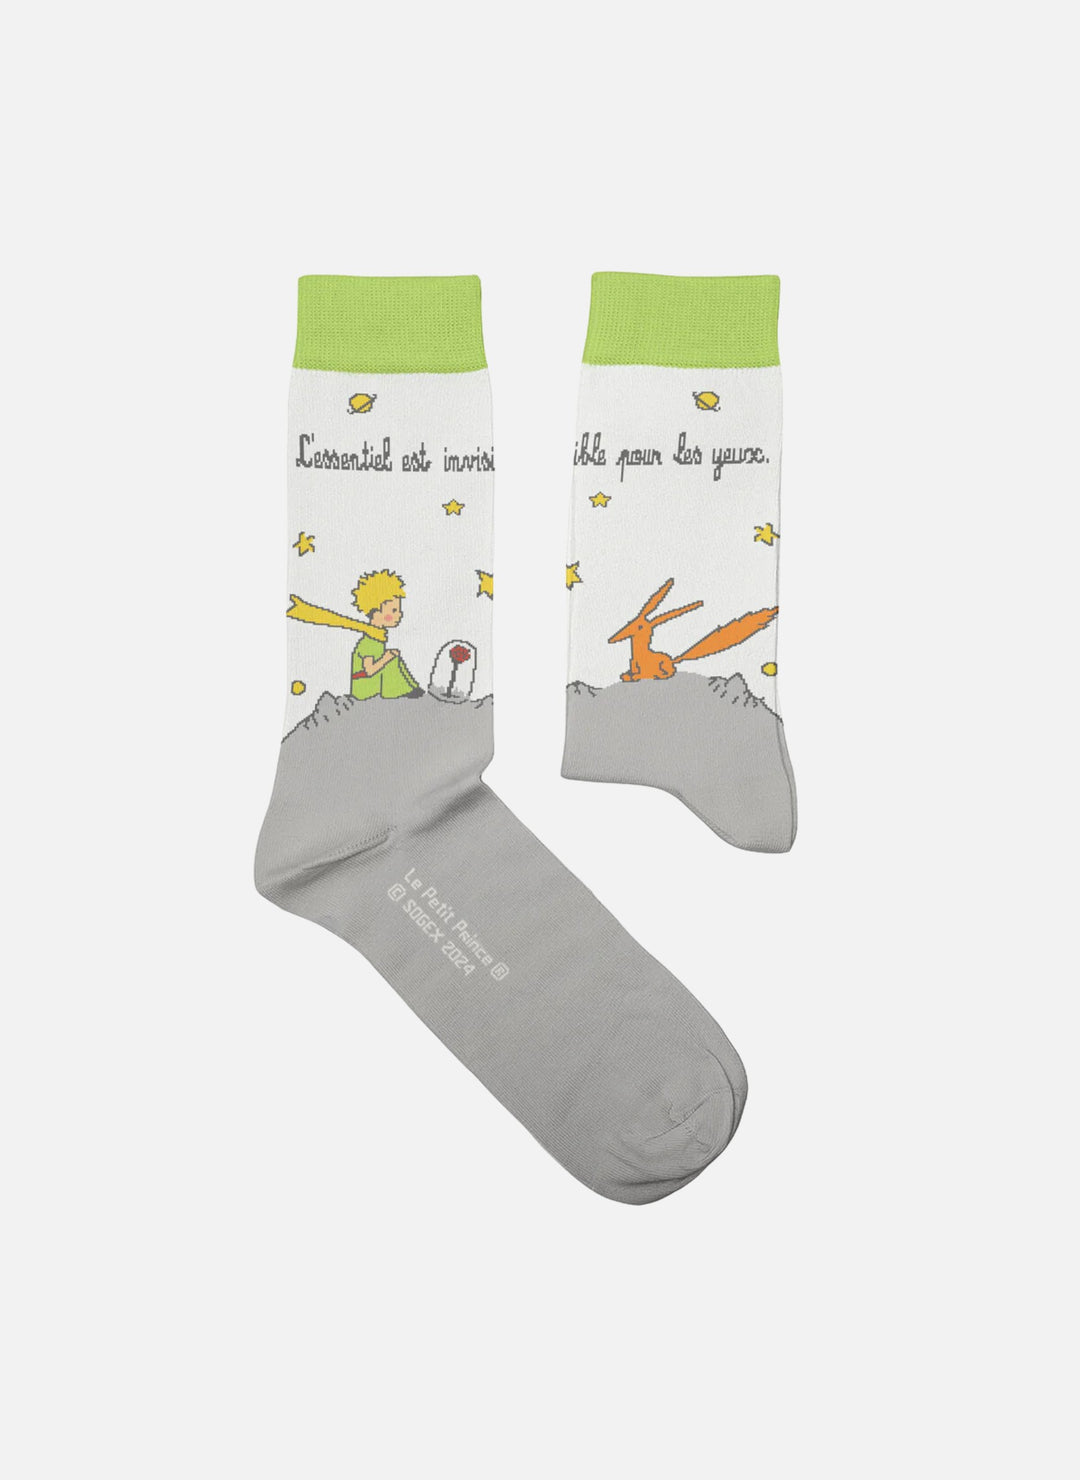 Chaussettes Enfants L'Essentiel, Le Petit Prince